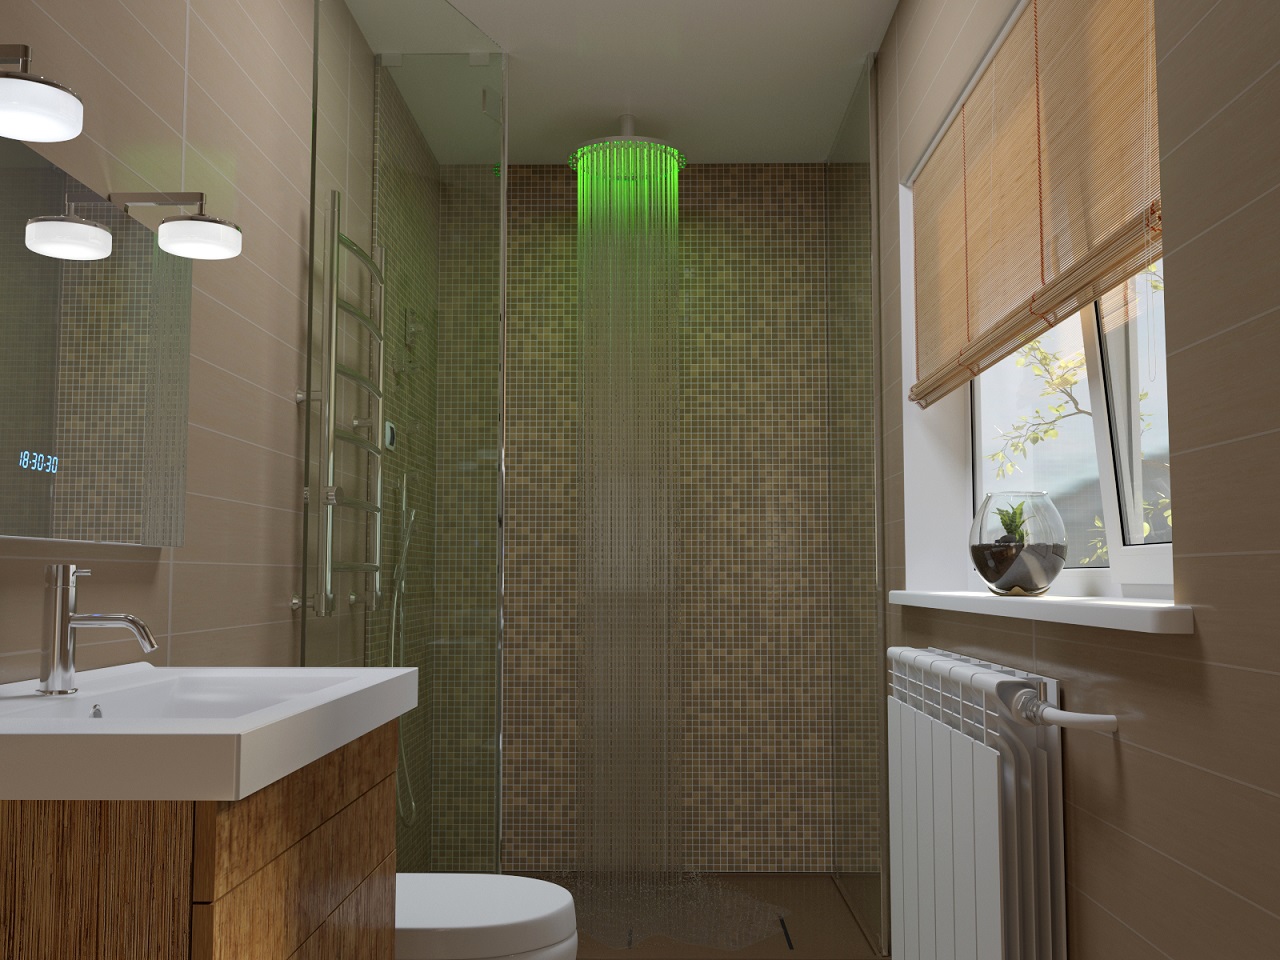 Ванная комната с яркой led-подсветкой душа фото Sparkle MCRD-400